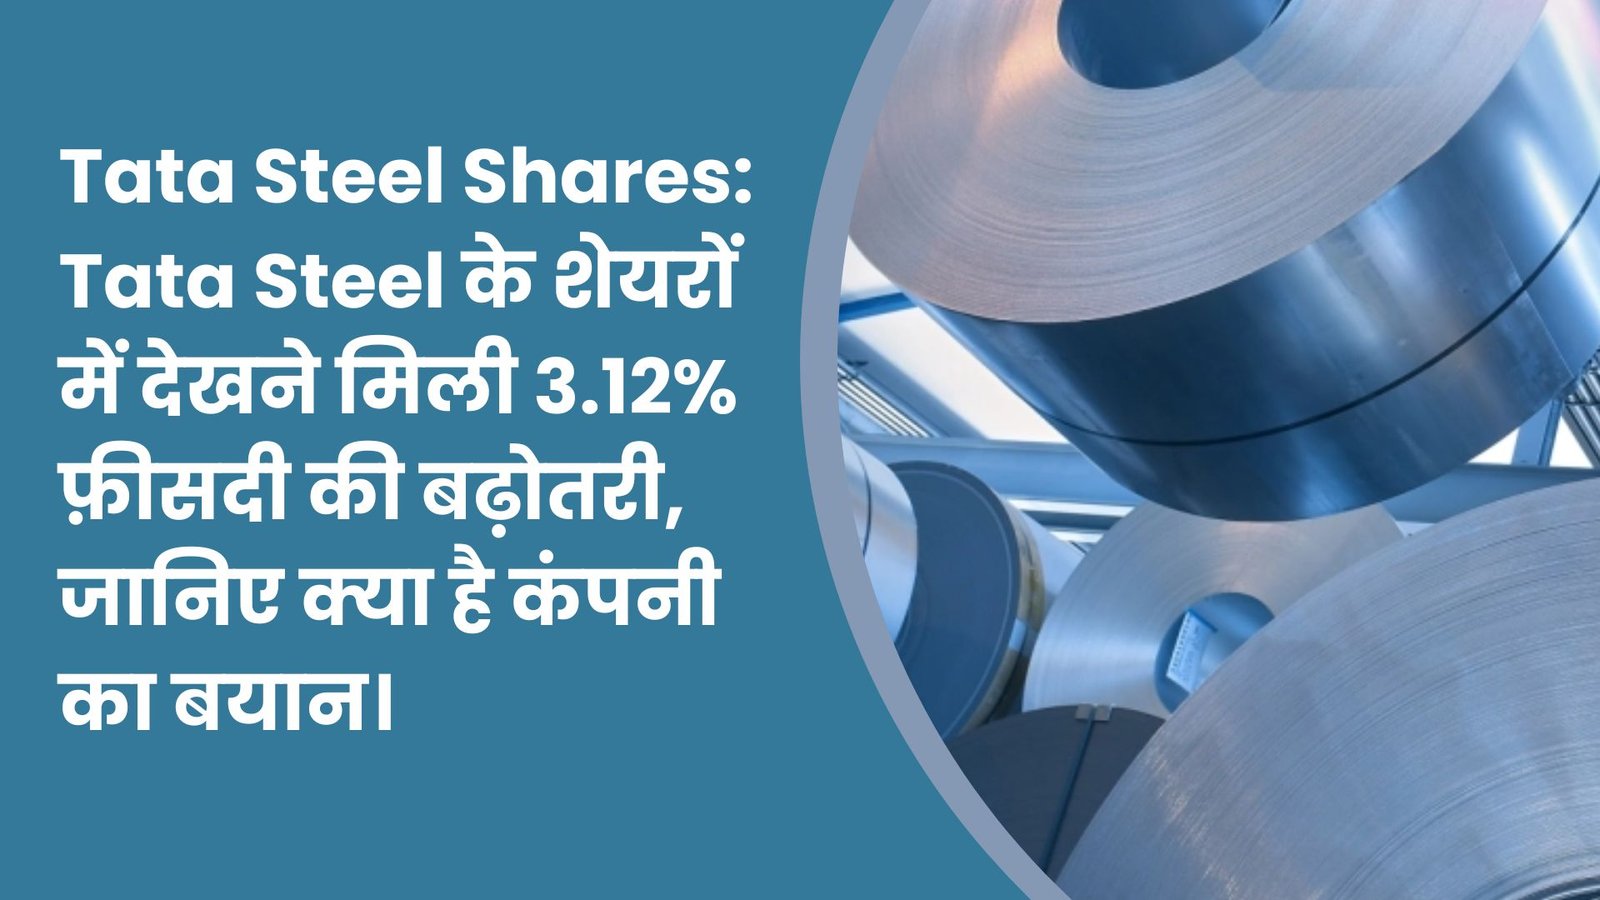 Tata Steel Shares: Tata Steel के शेयरों में देखने मिली 3.12% फ़ीसदी की बढ़ोतरी, जानिए क्या है कंपनी का बयान।